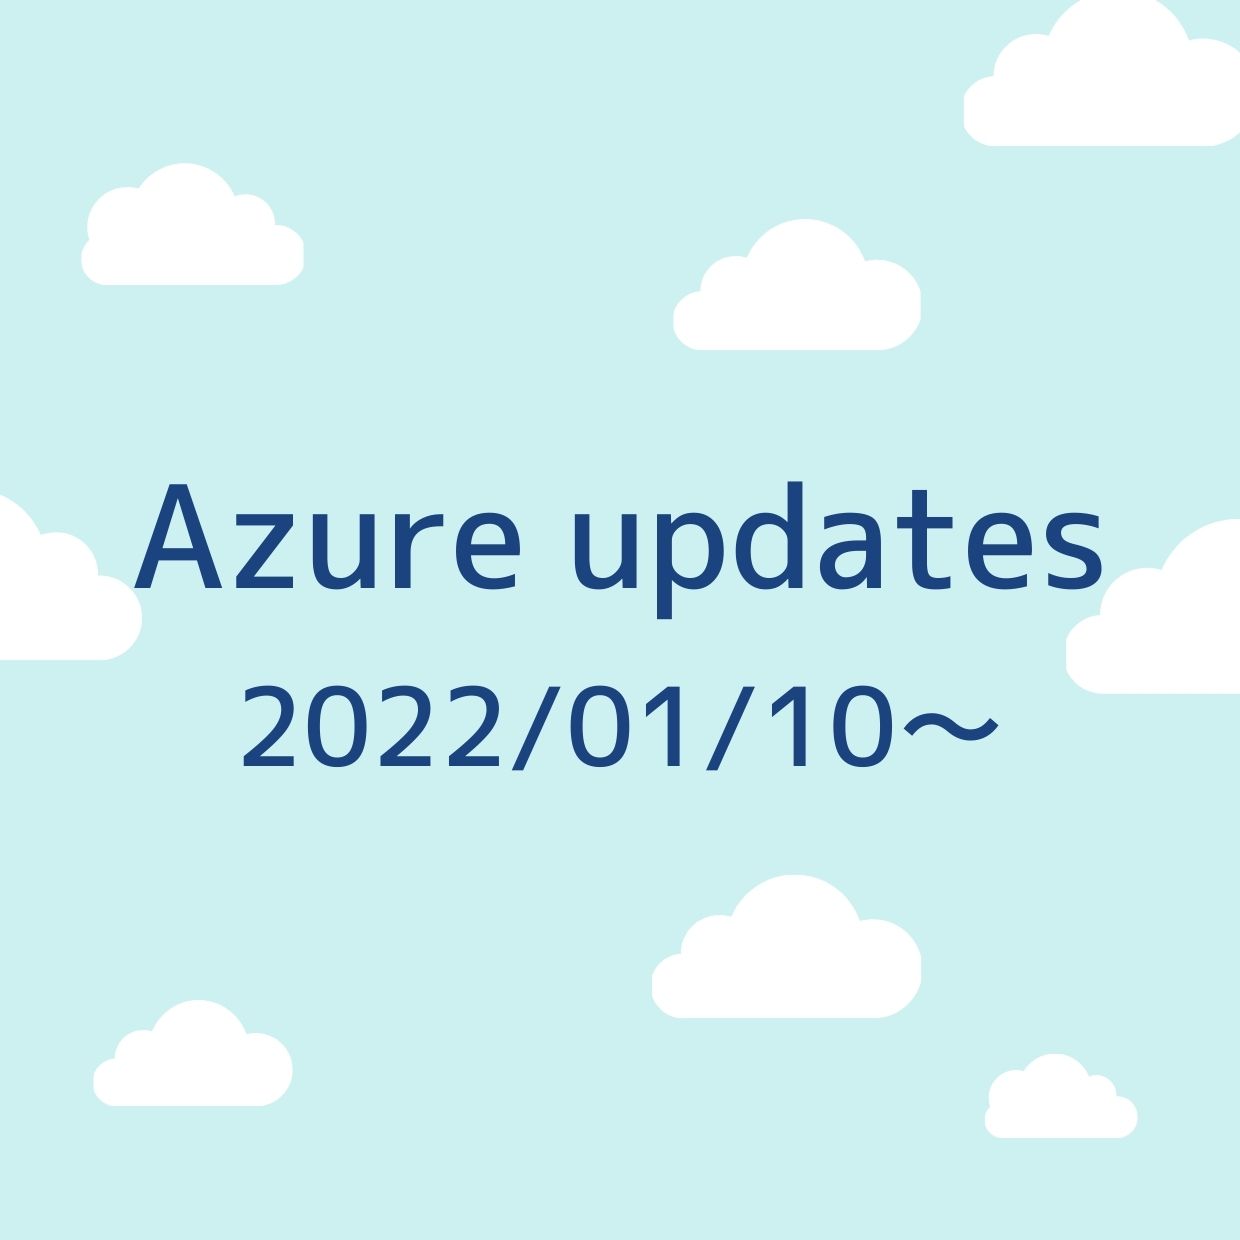 2022/01/10週の Azure updates 日本語速報